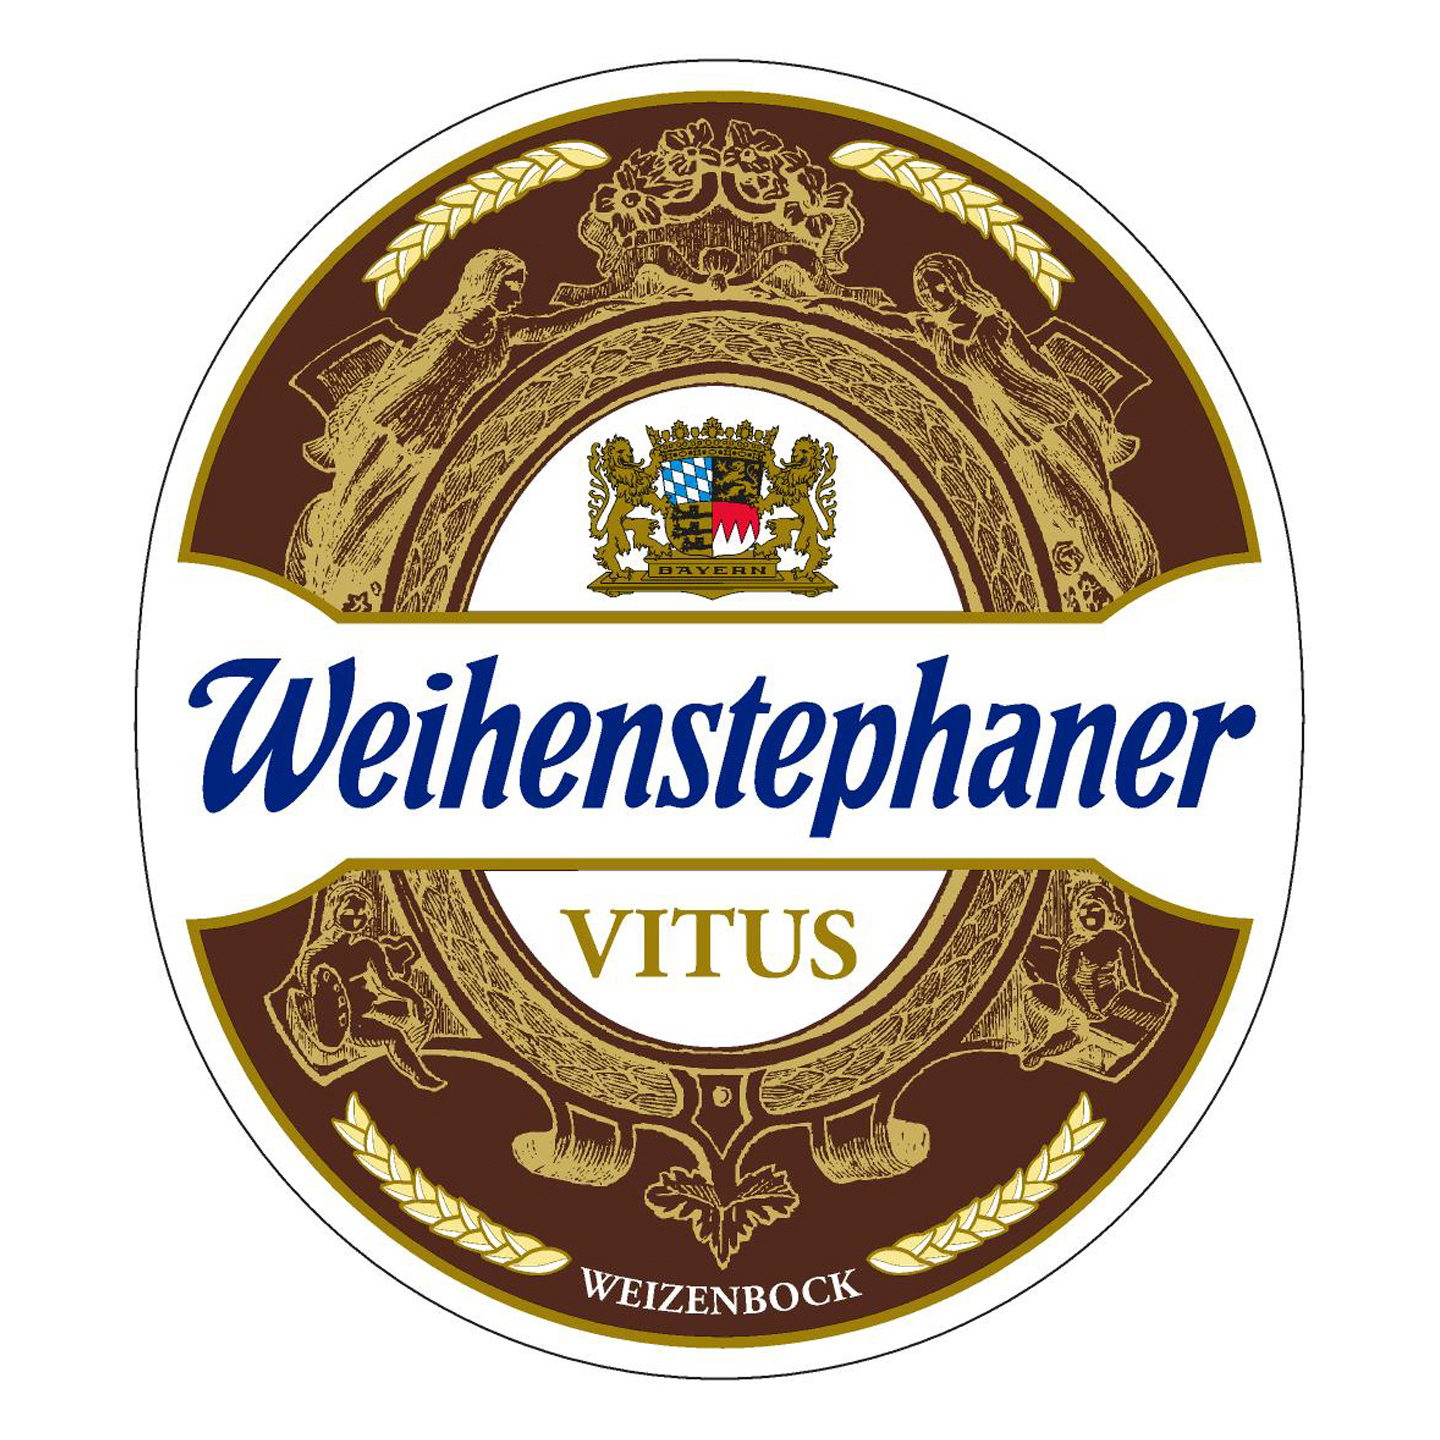 Thumbnail image for Weihenstephaner Vitus